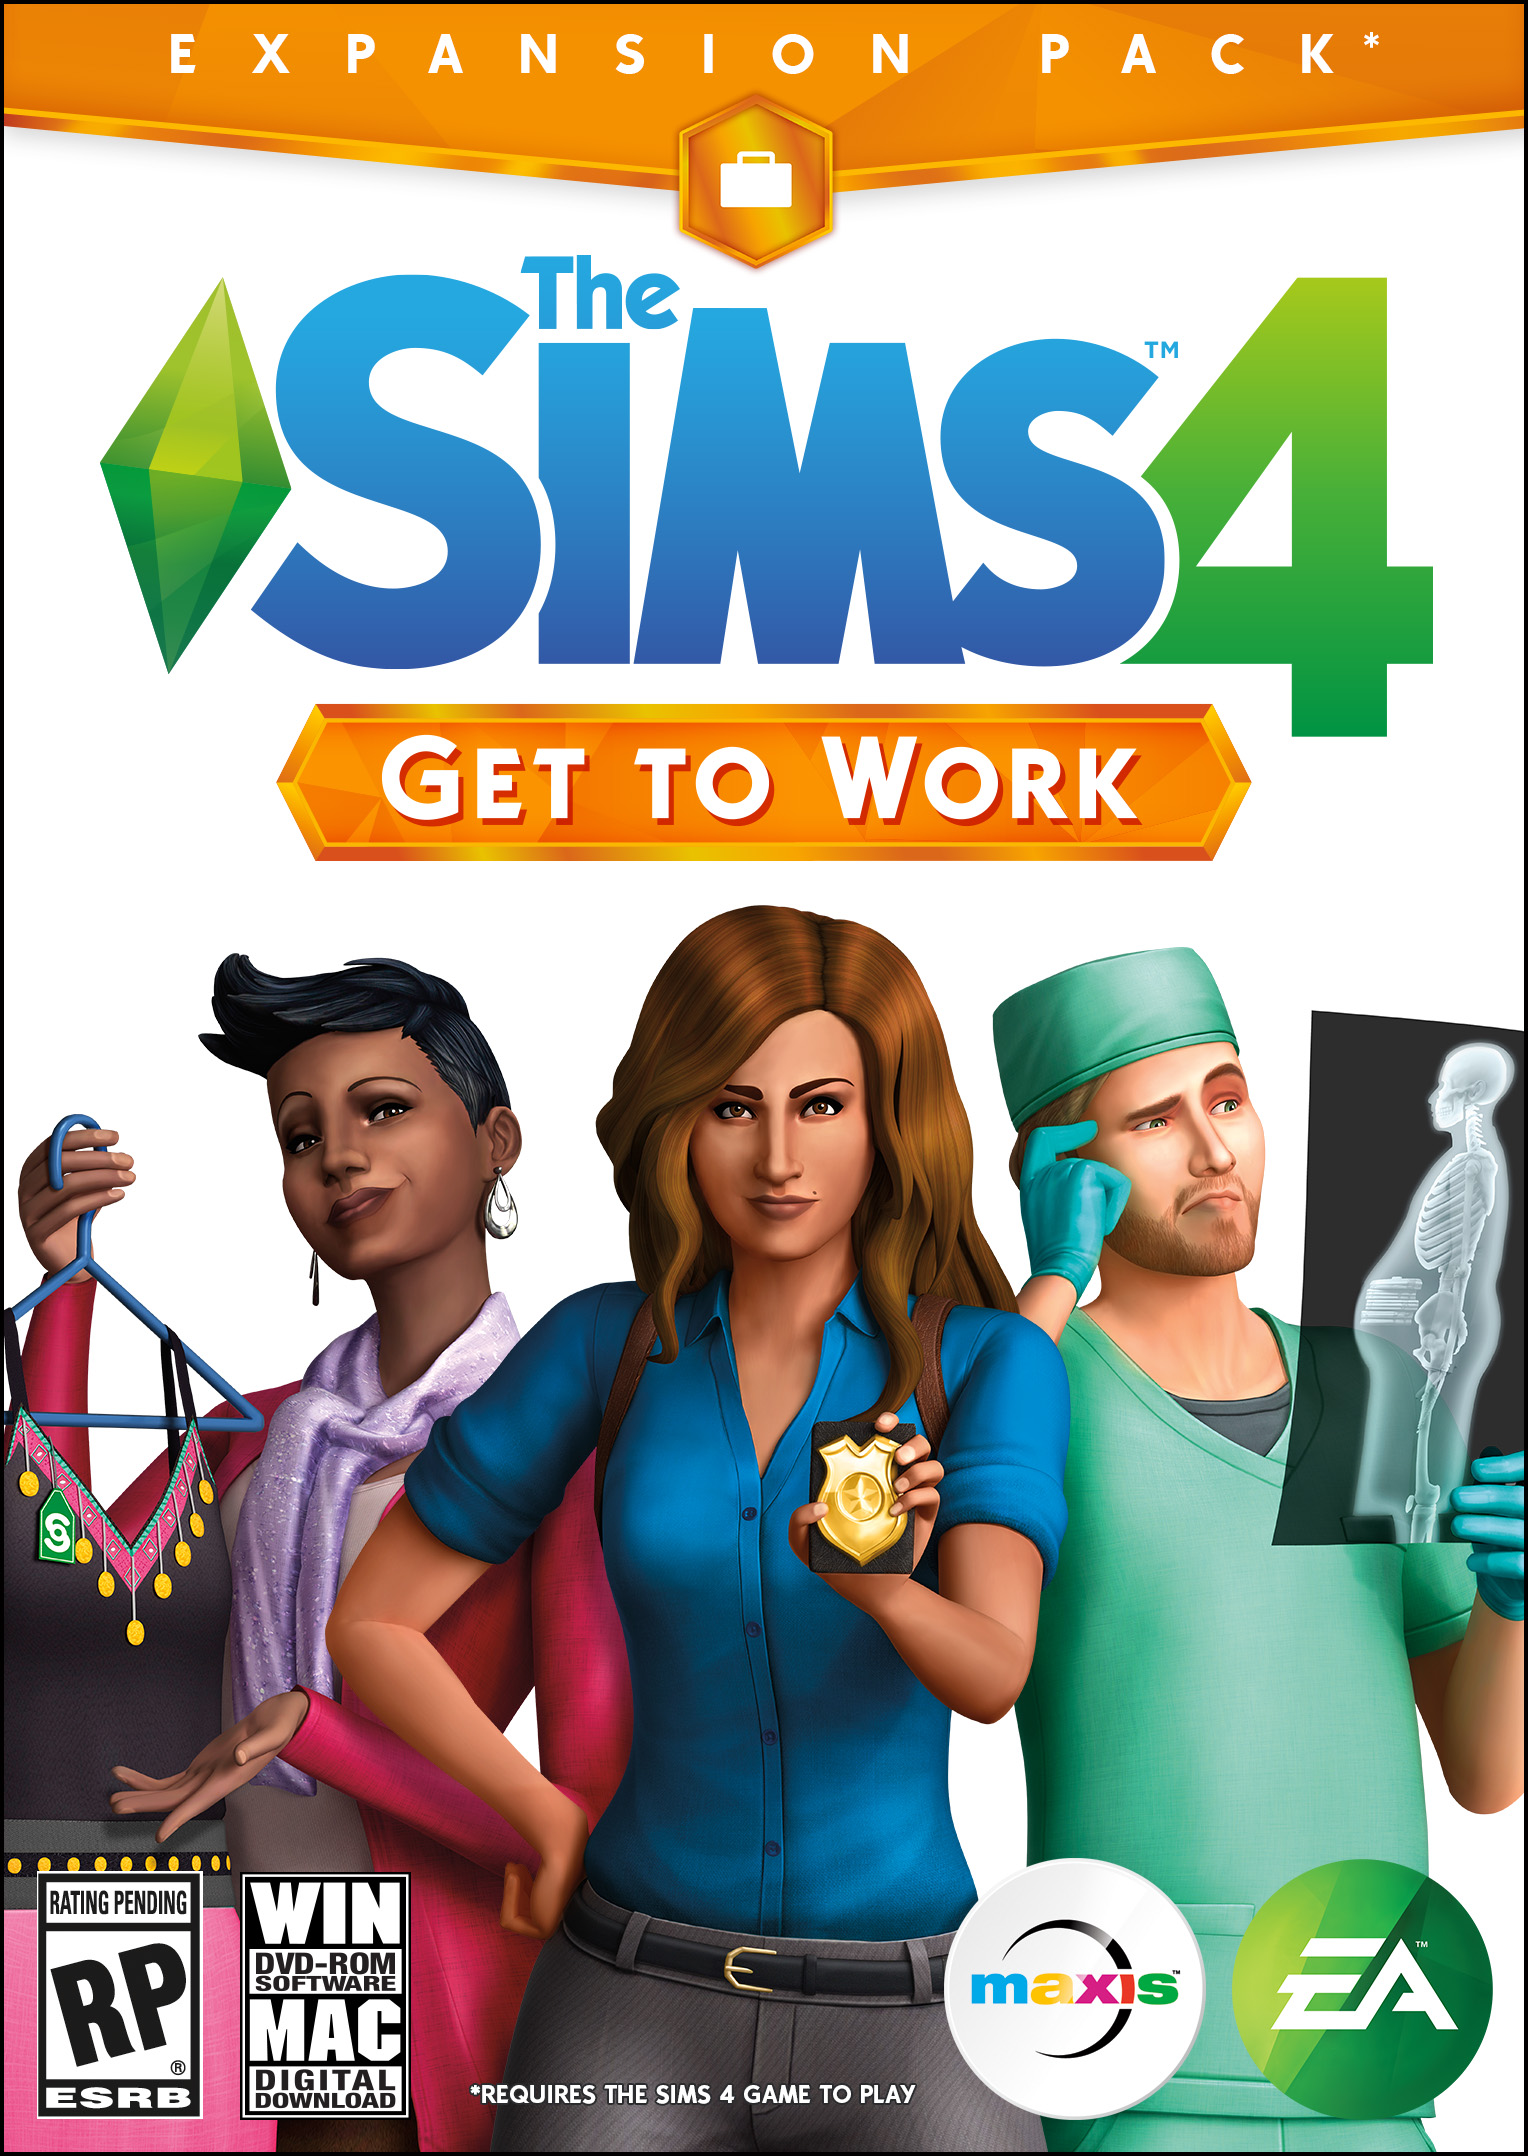 Sims 4 Free Download Mac Os